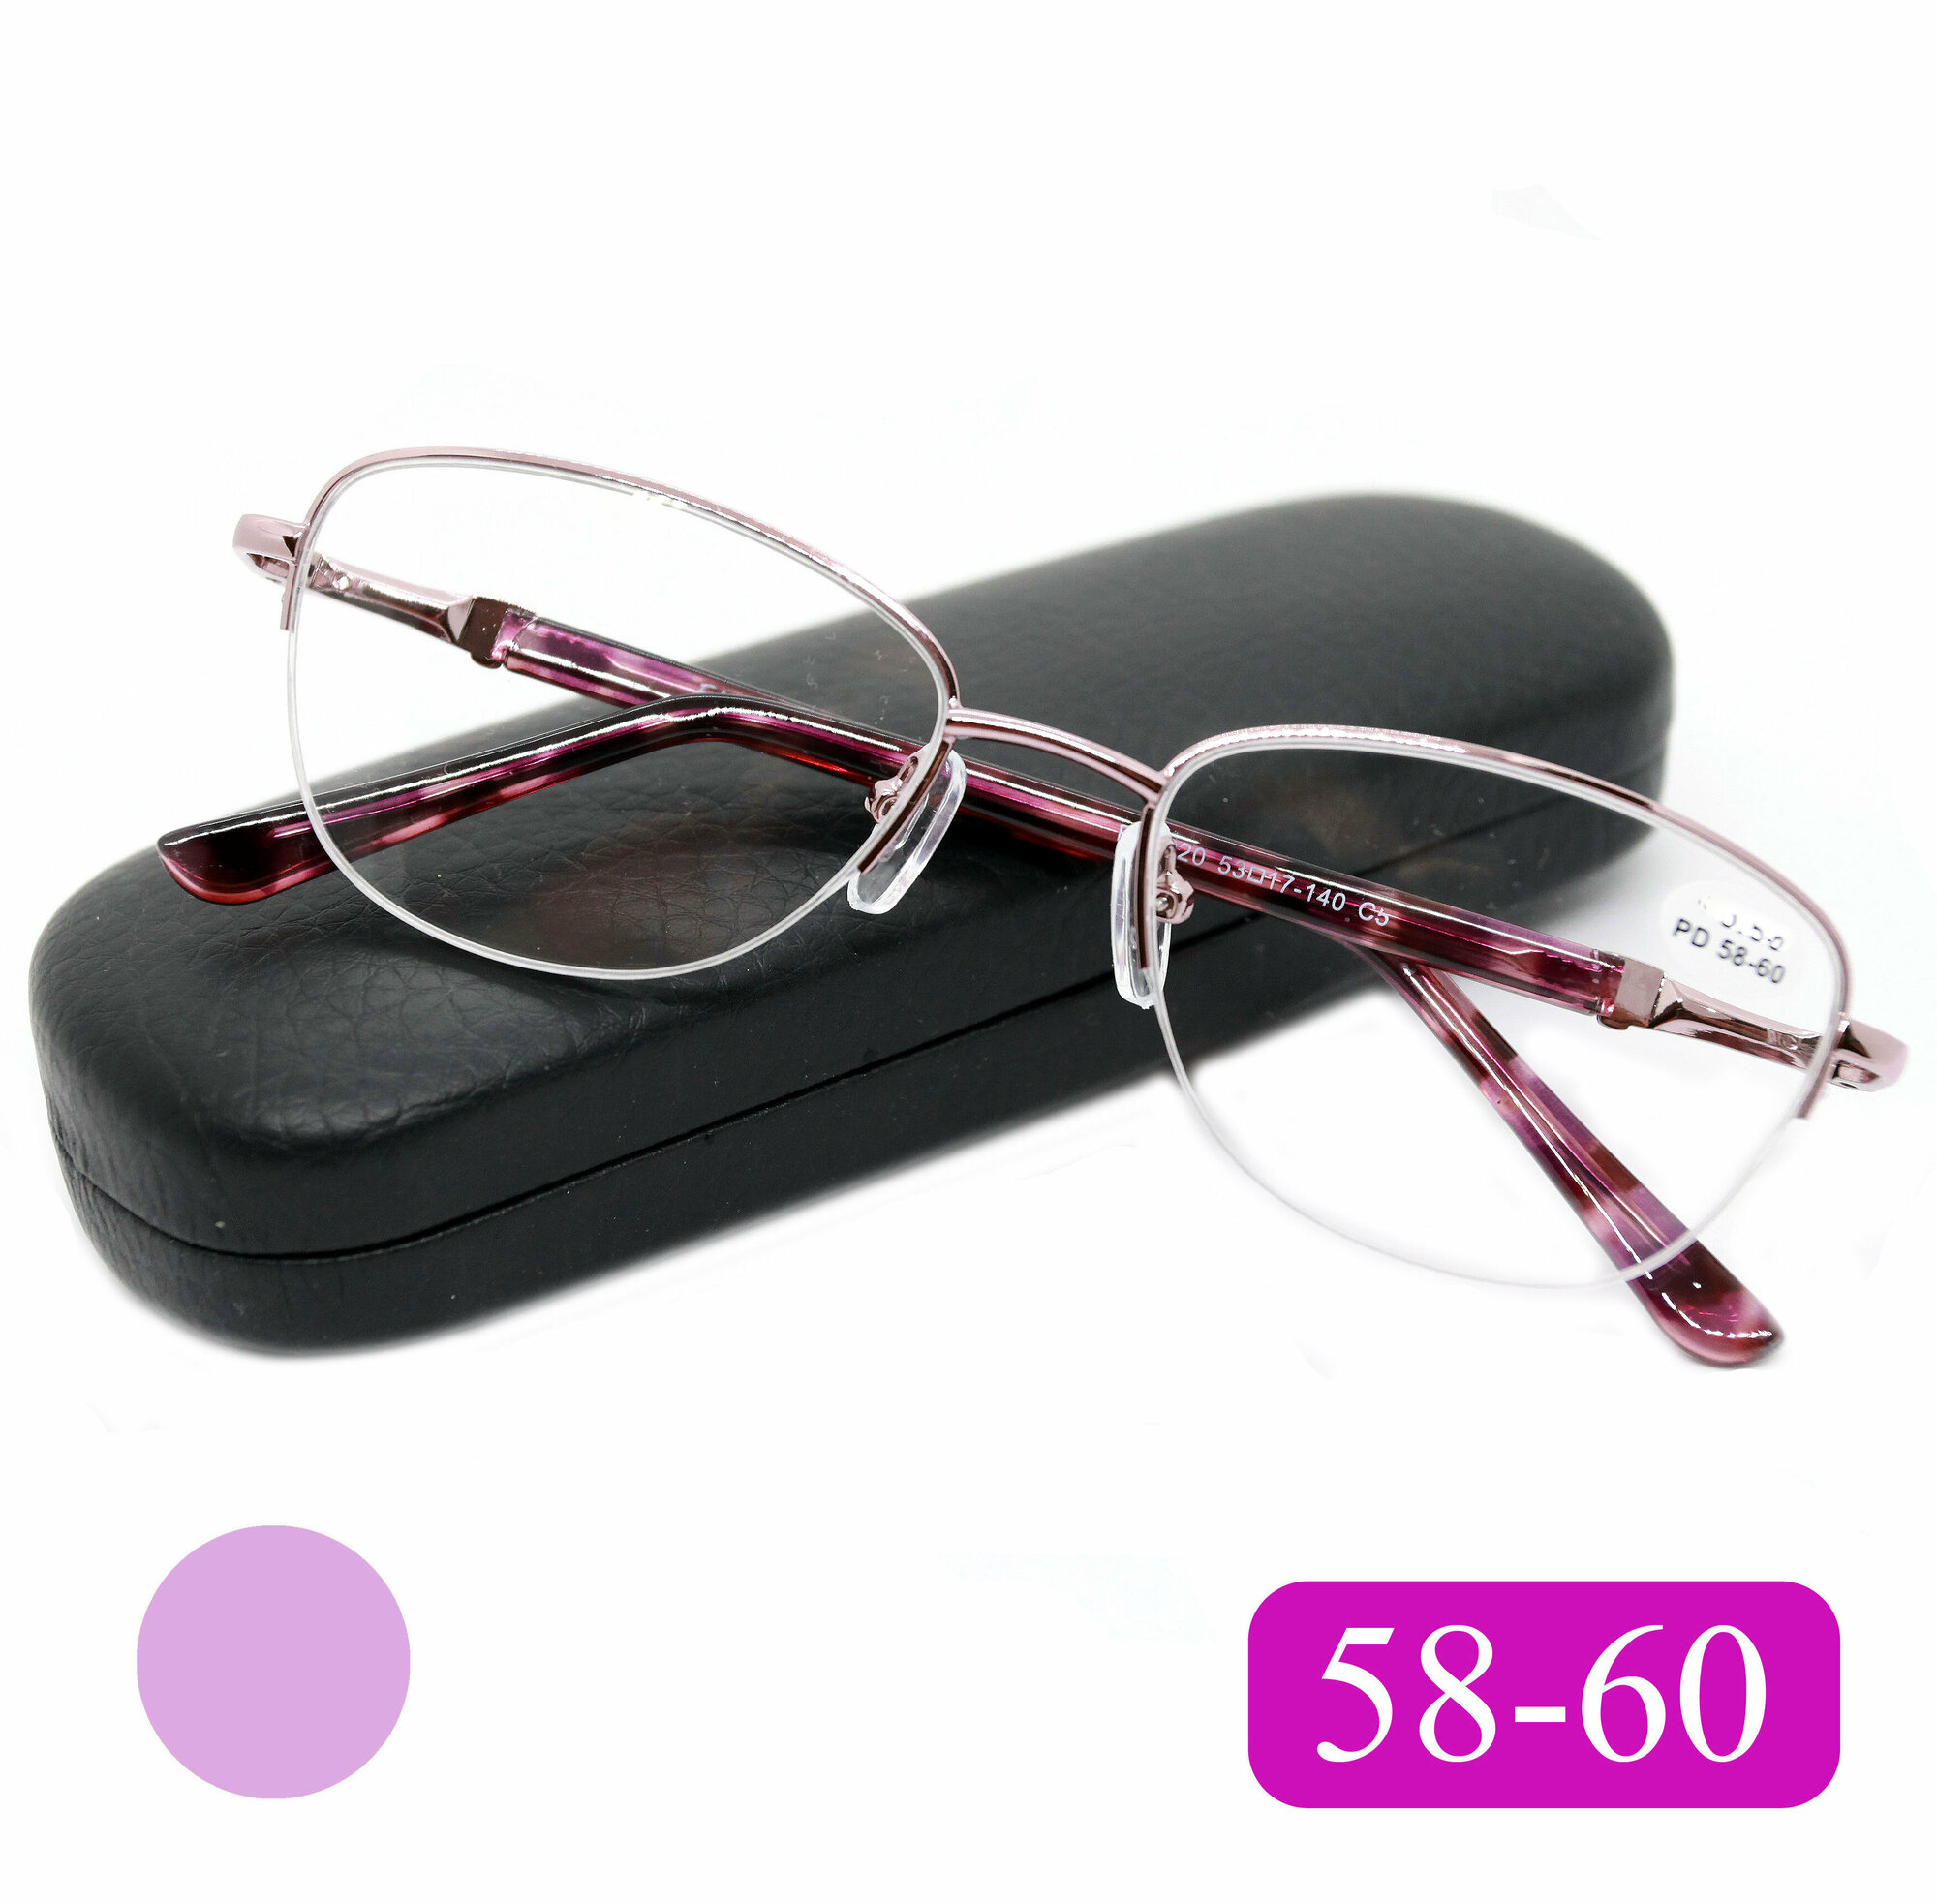 Готовые очки 58-60 из медицинской стали (+6.50) FABIA MONTI 8920 C5 цвет фиолетовый с футляром РЦ 58-60